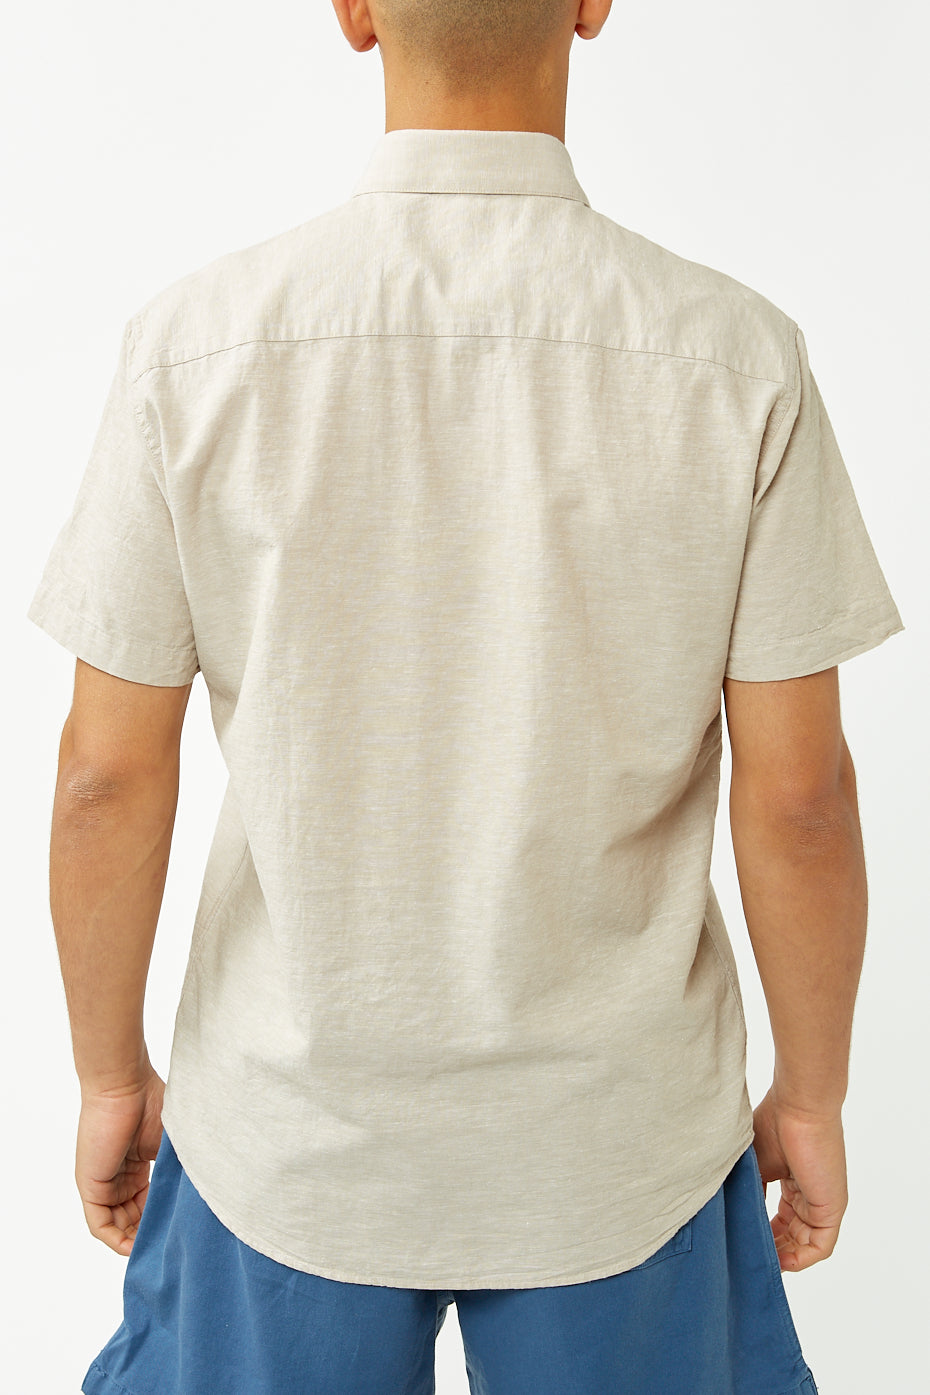 Crockery Linen Shirt